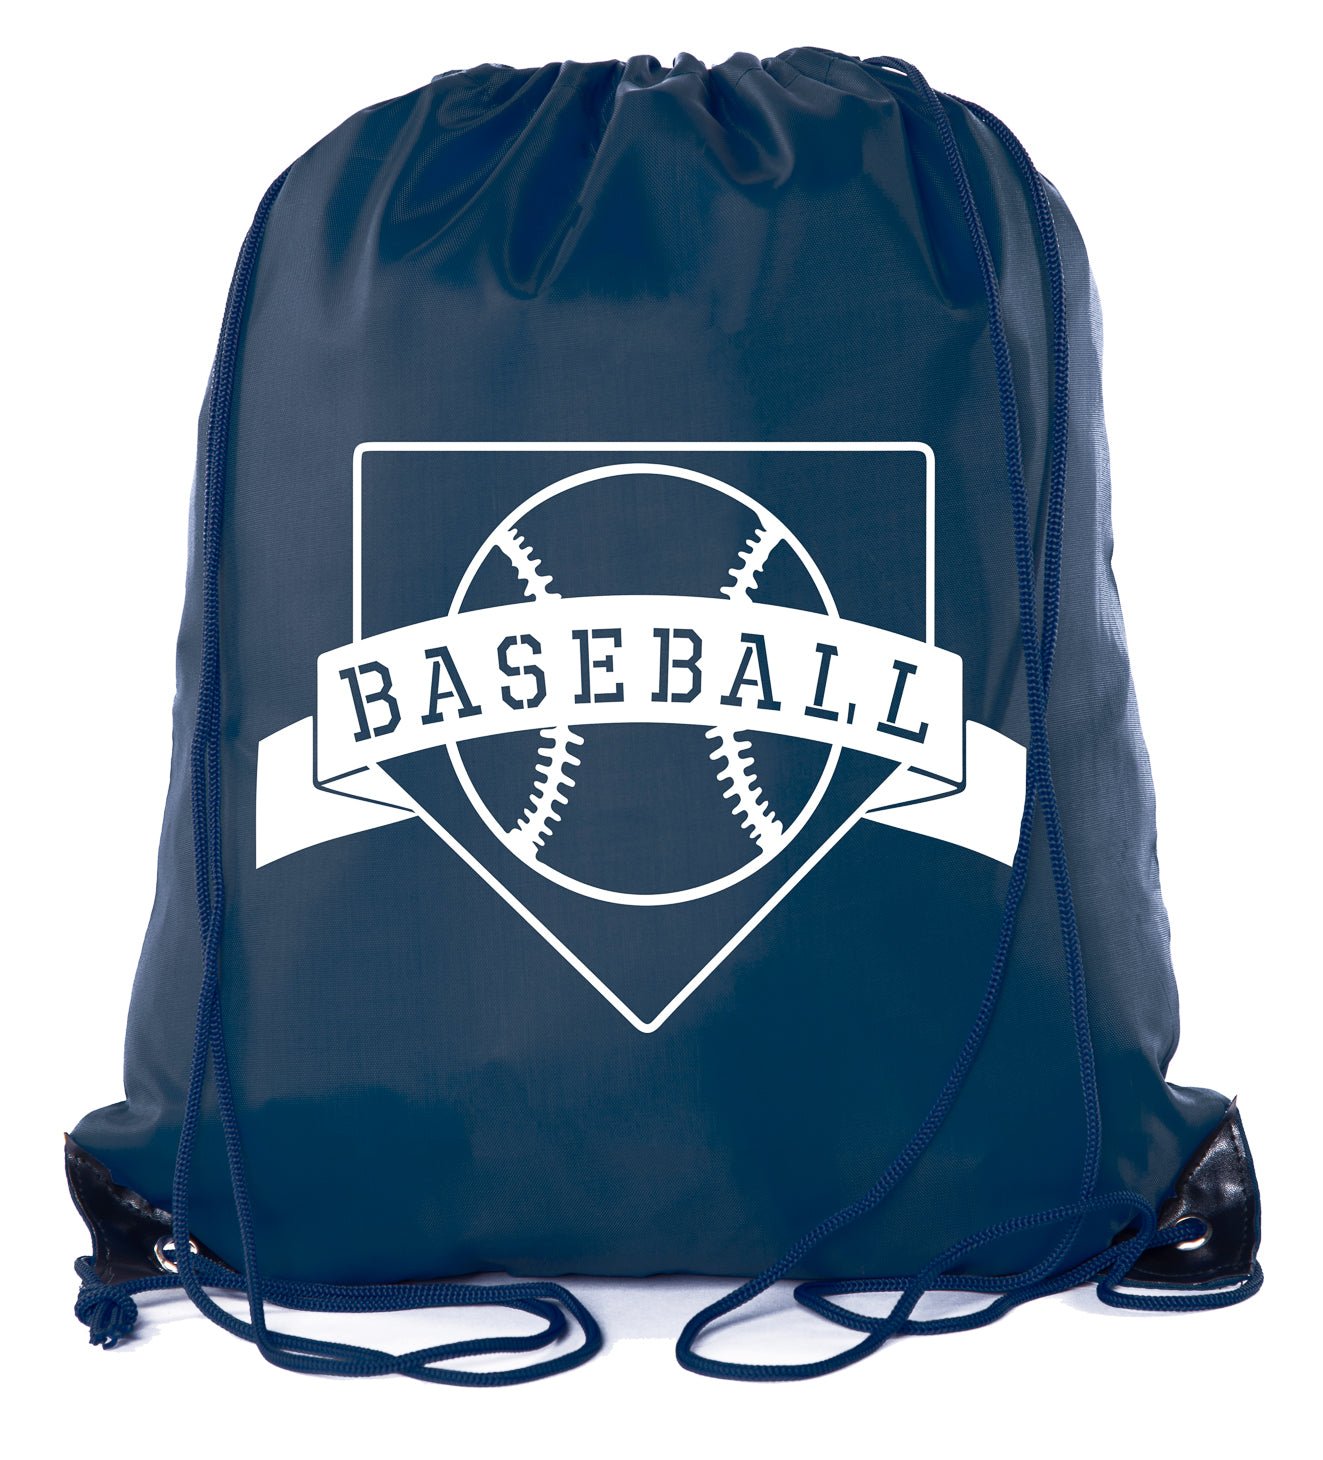 Home Plate Baseball Polyester Drawstring Bag - Mato & Hash